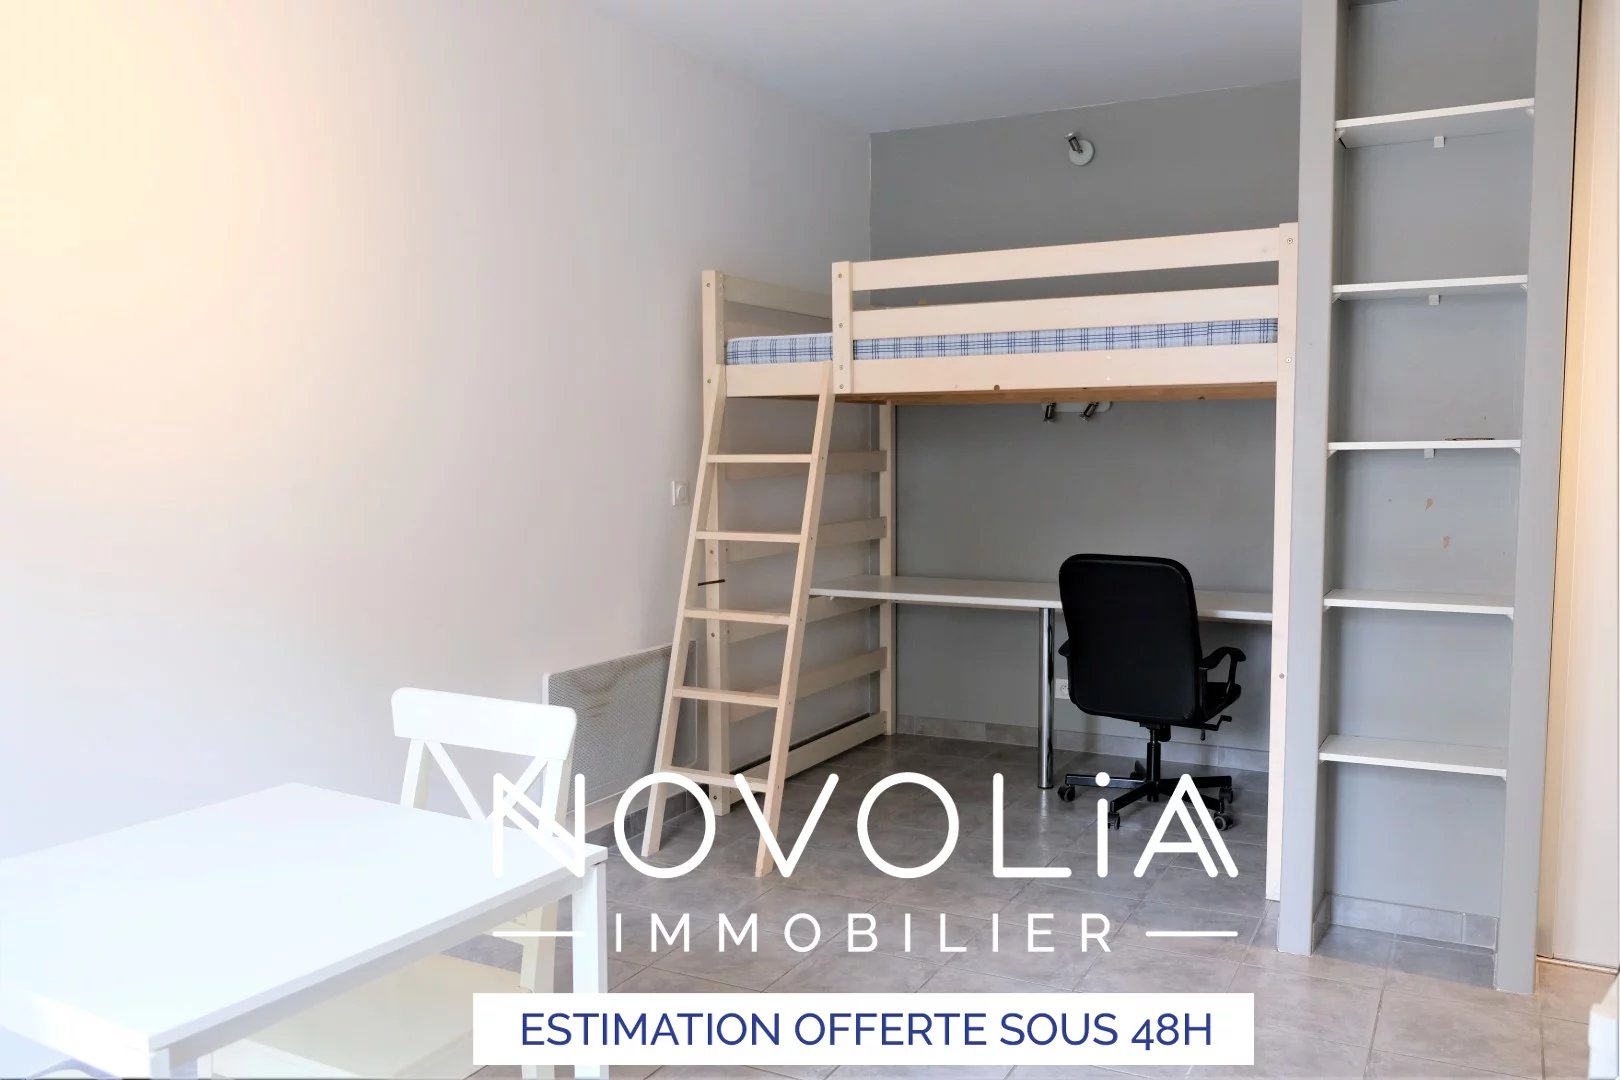 Achat Appartement, Surface de 27.87 m²/ Total carrez : 27 m², 1 pièce, Lyon 8ème (69008)